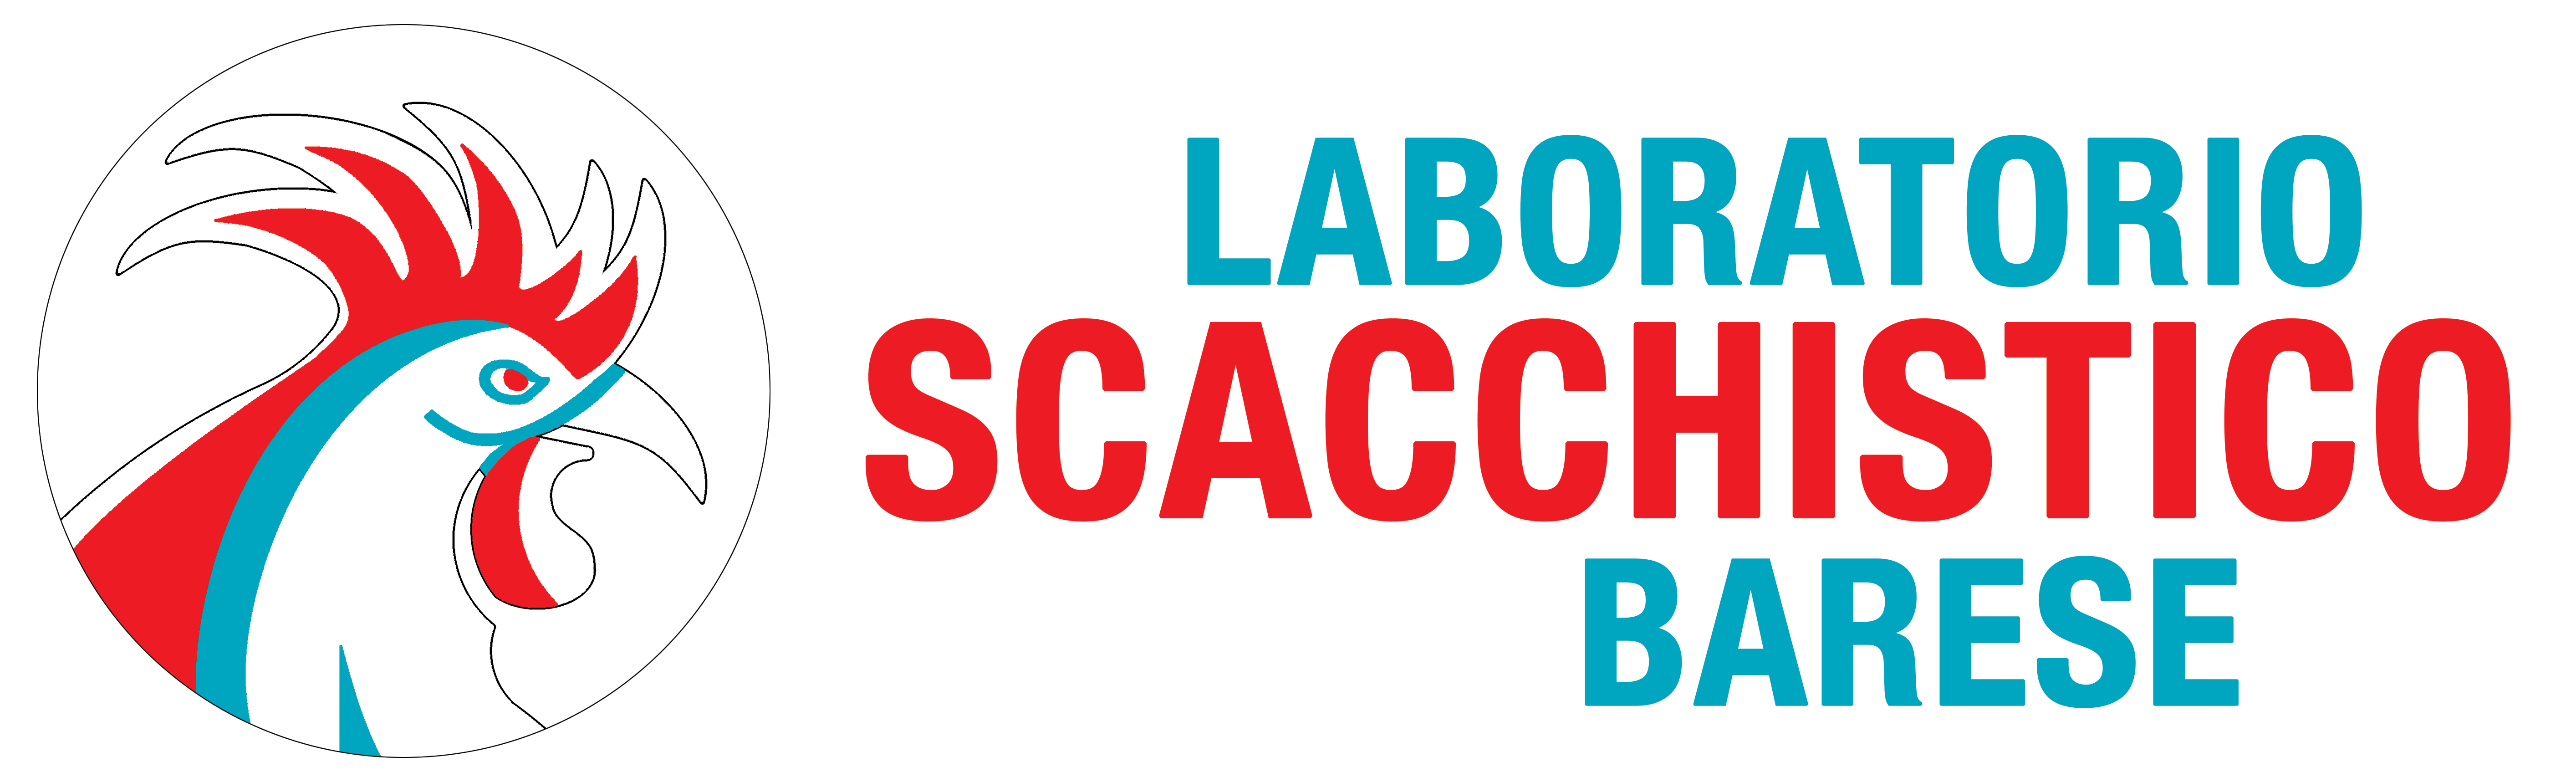 Laboratorio Scacchistico Barese - Logo